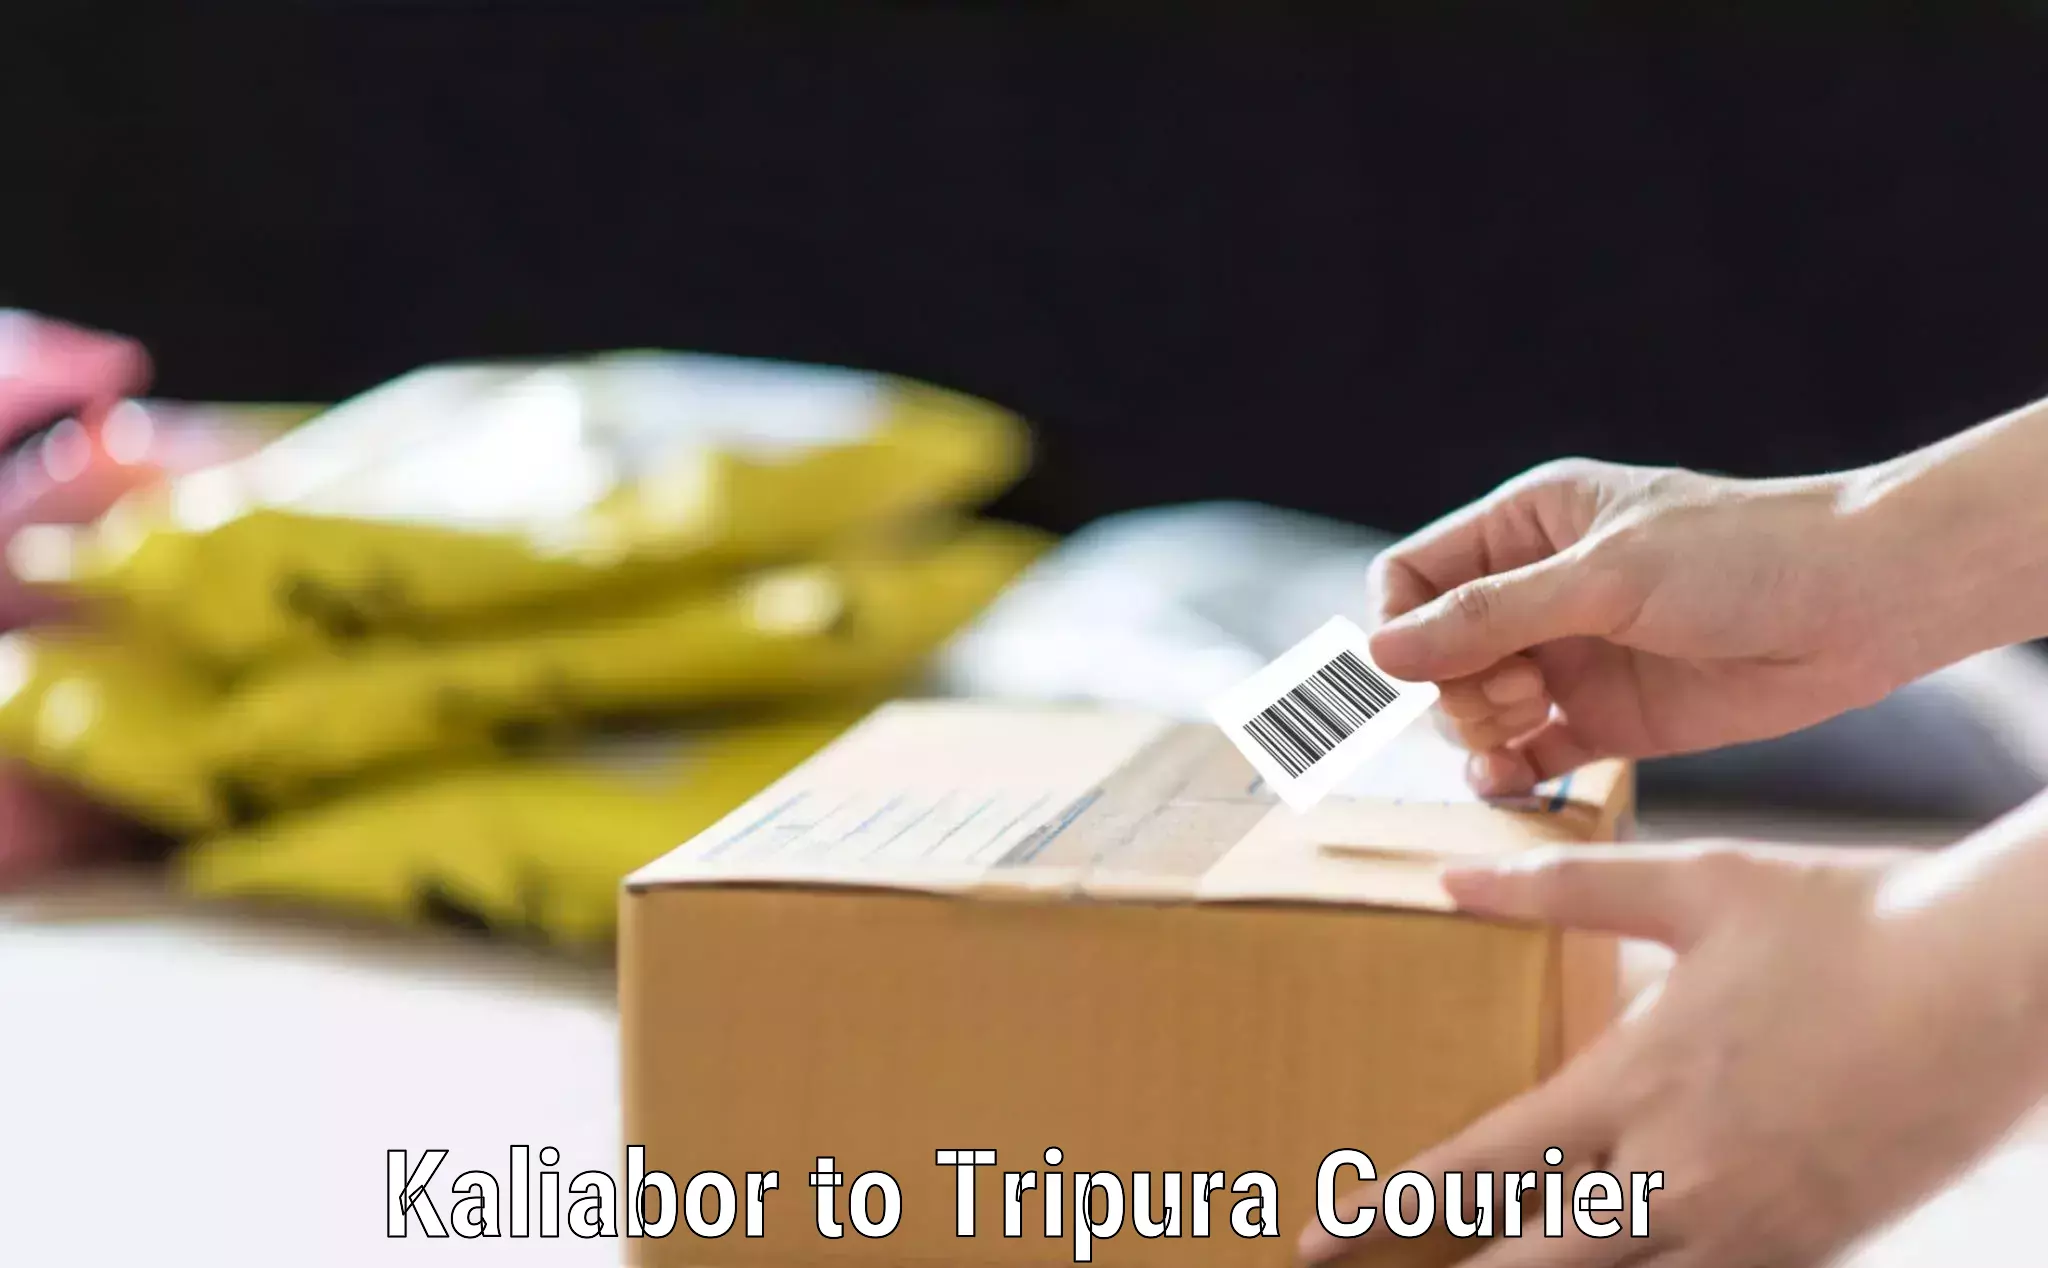 Baggage transport scheduler Kaliabor to Tripura